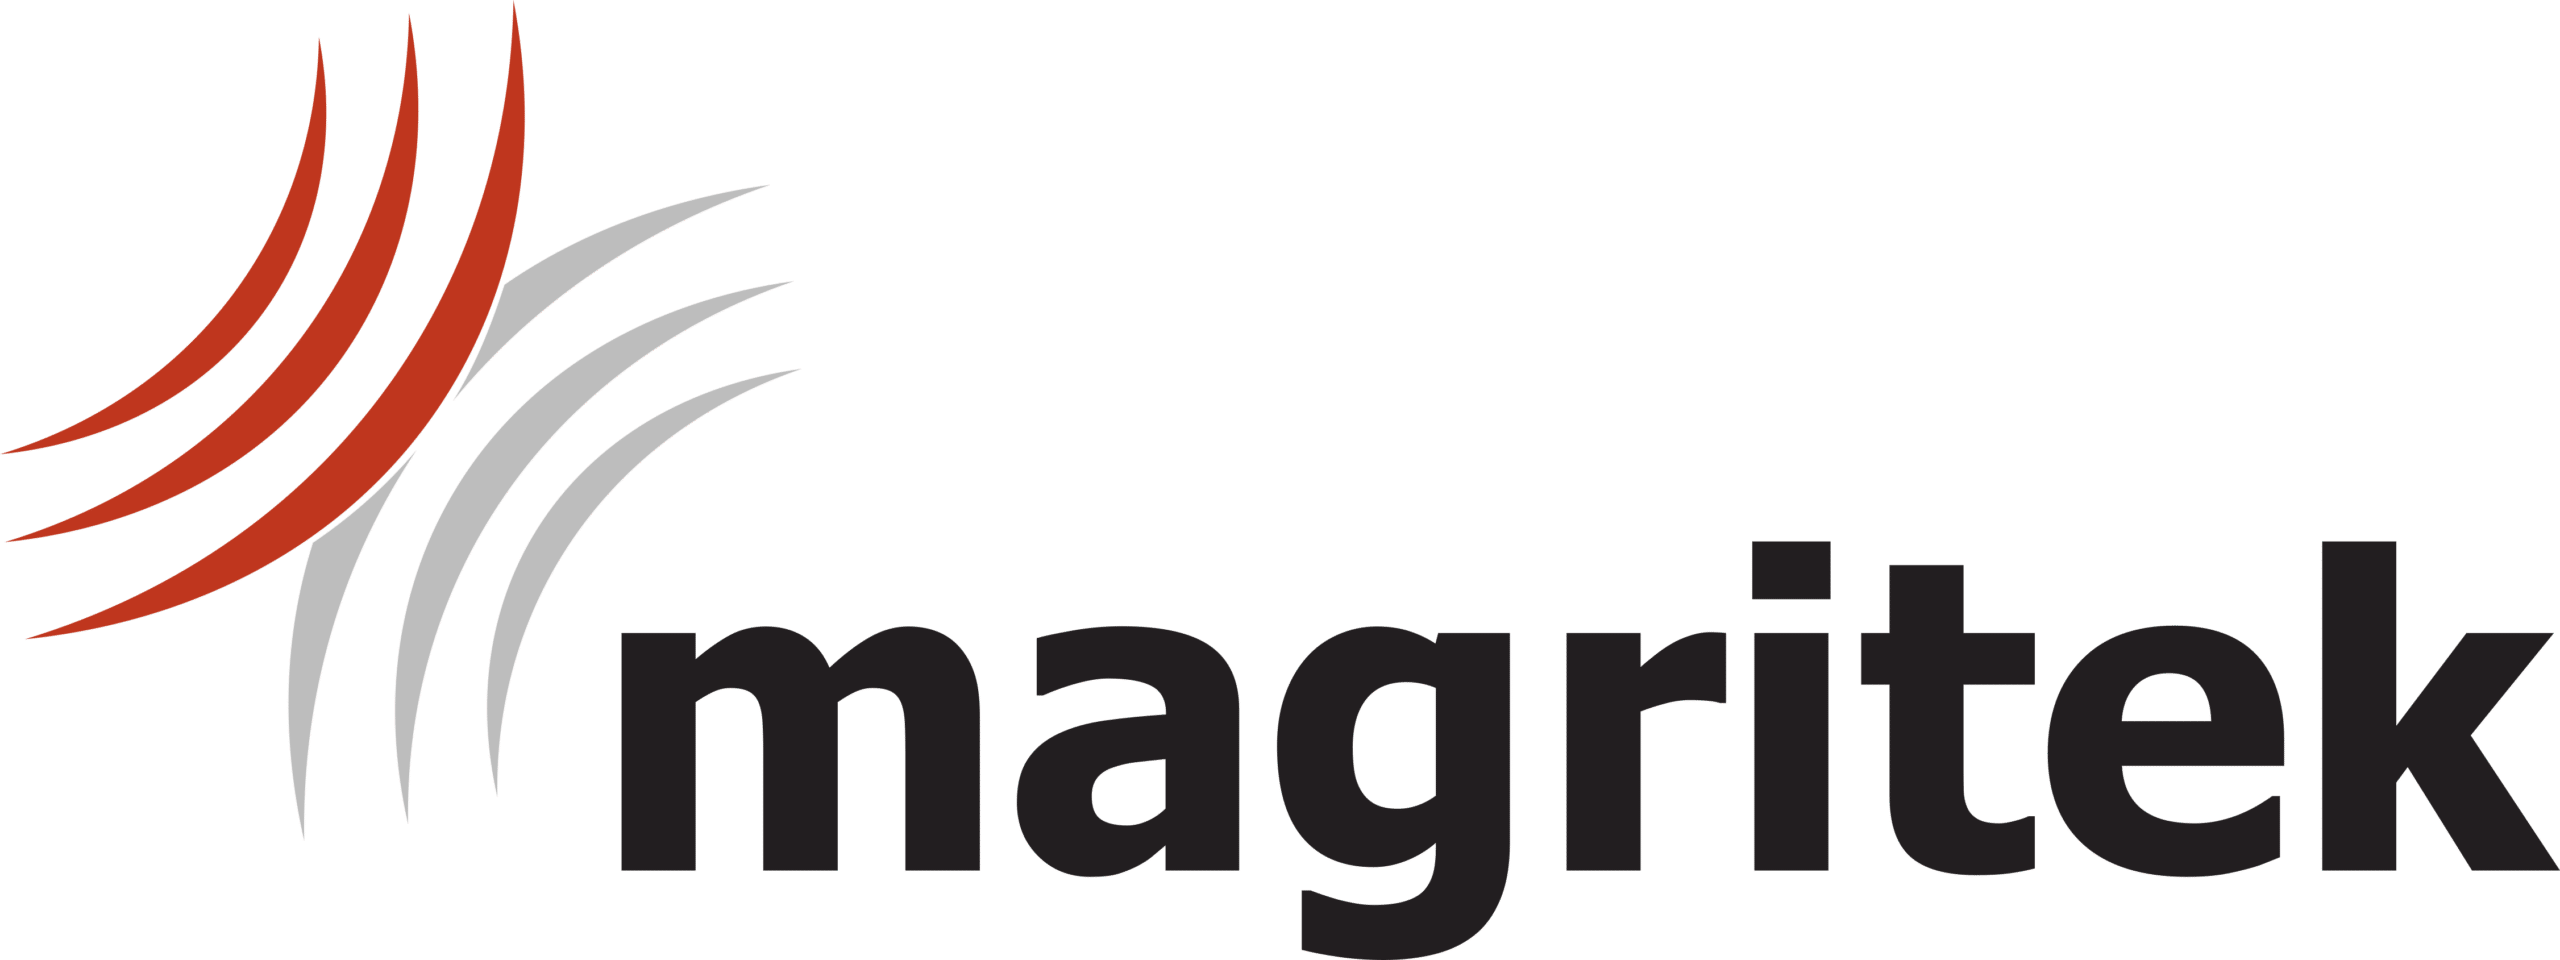 Magritek_Logo_without_website_600dpi.png